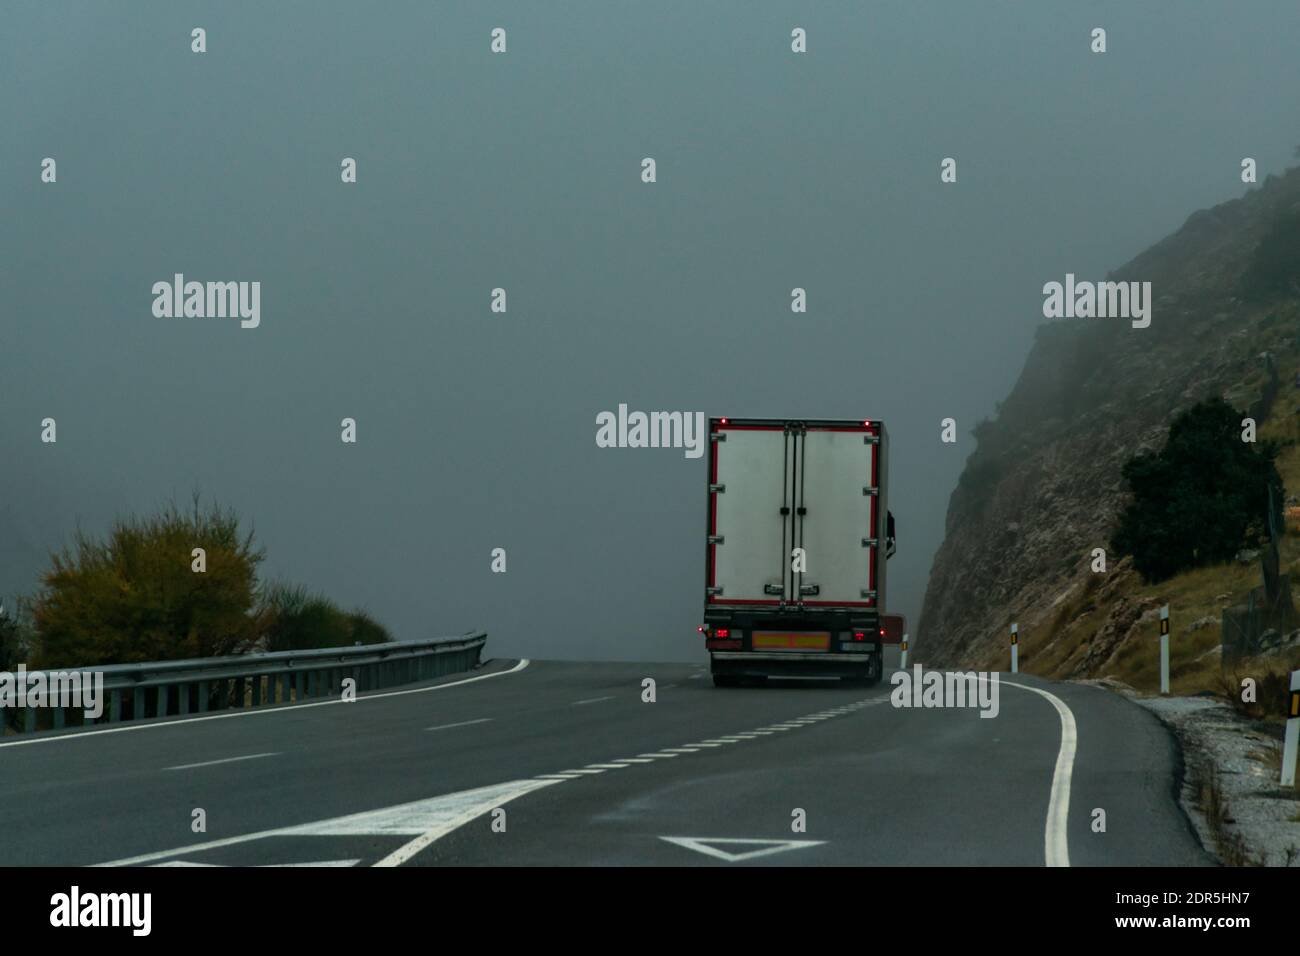 Camión con semirremolque refrigerado conduciendo por una carretera en un día foggy. Foto de stock